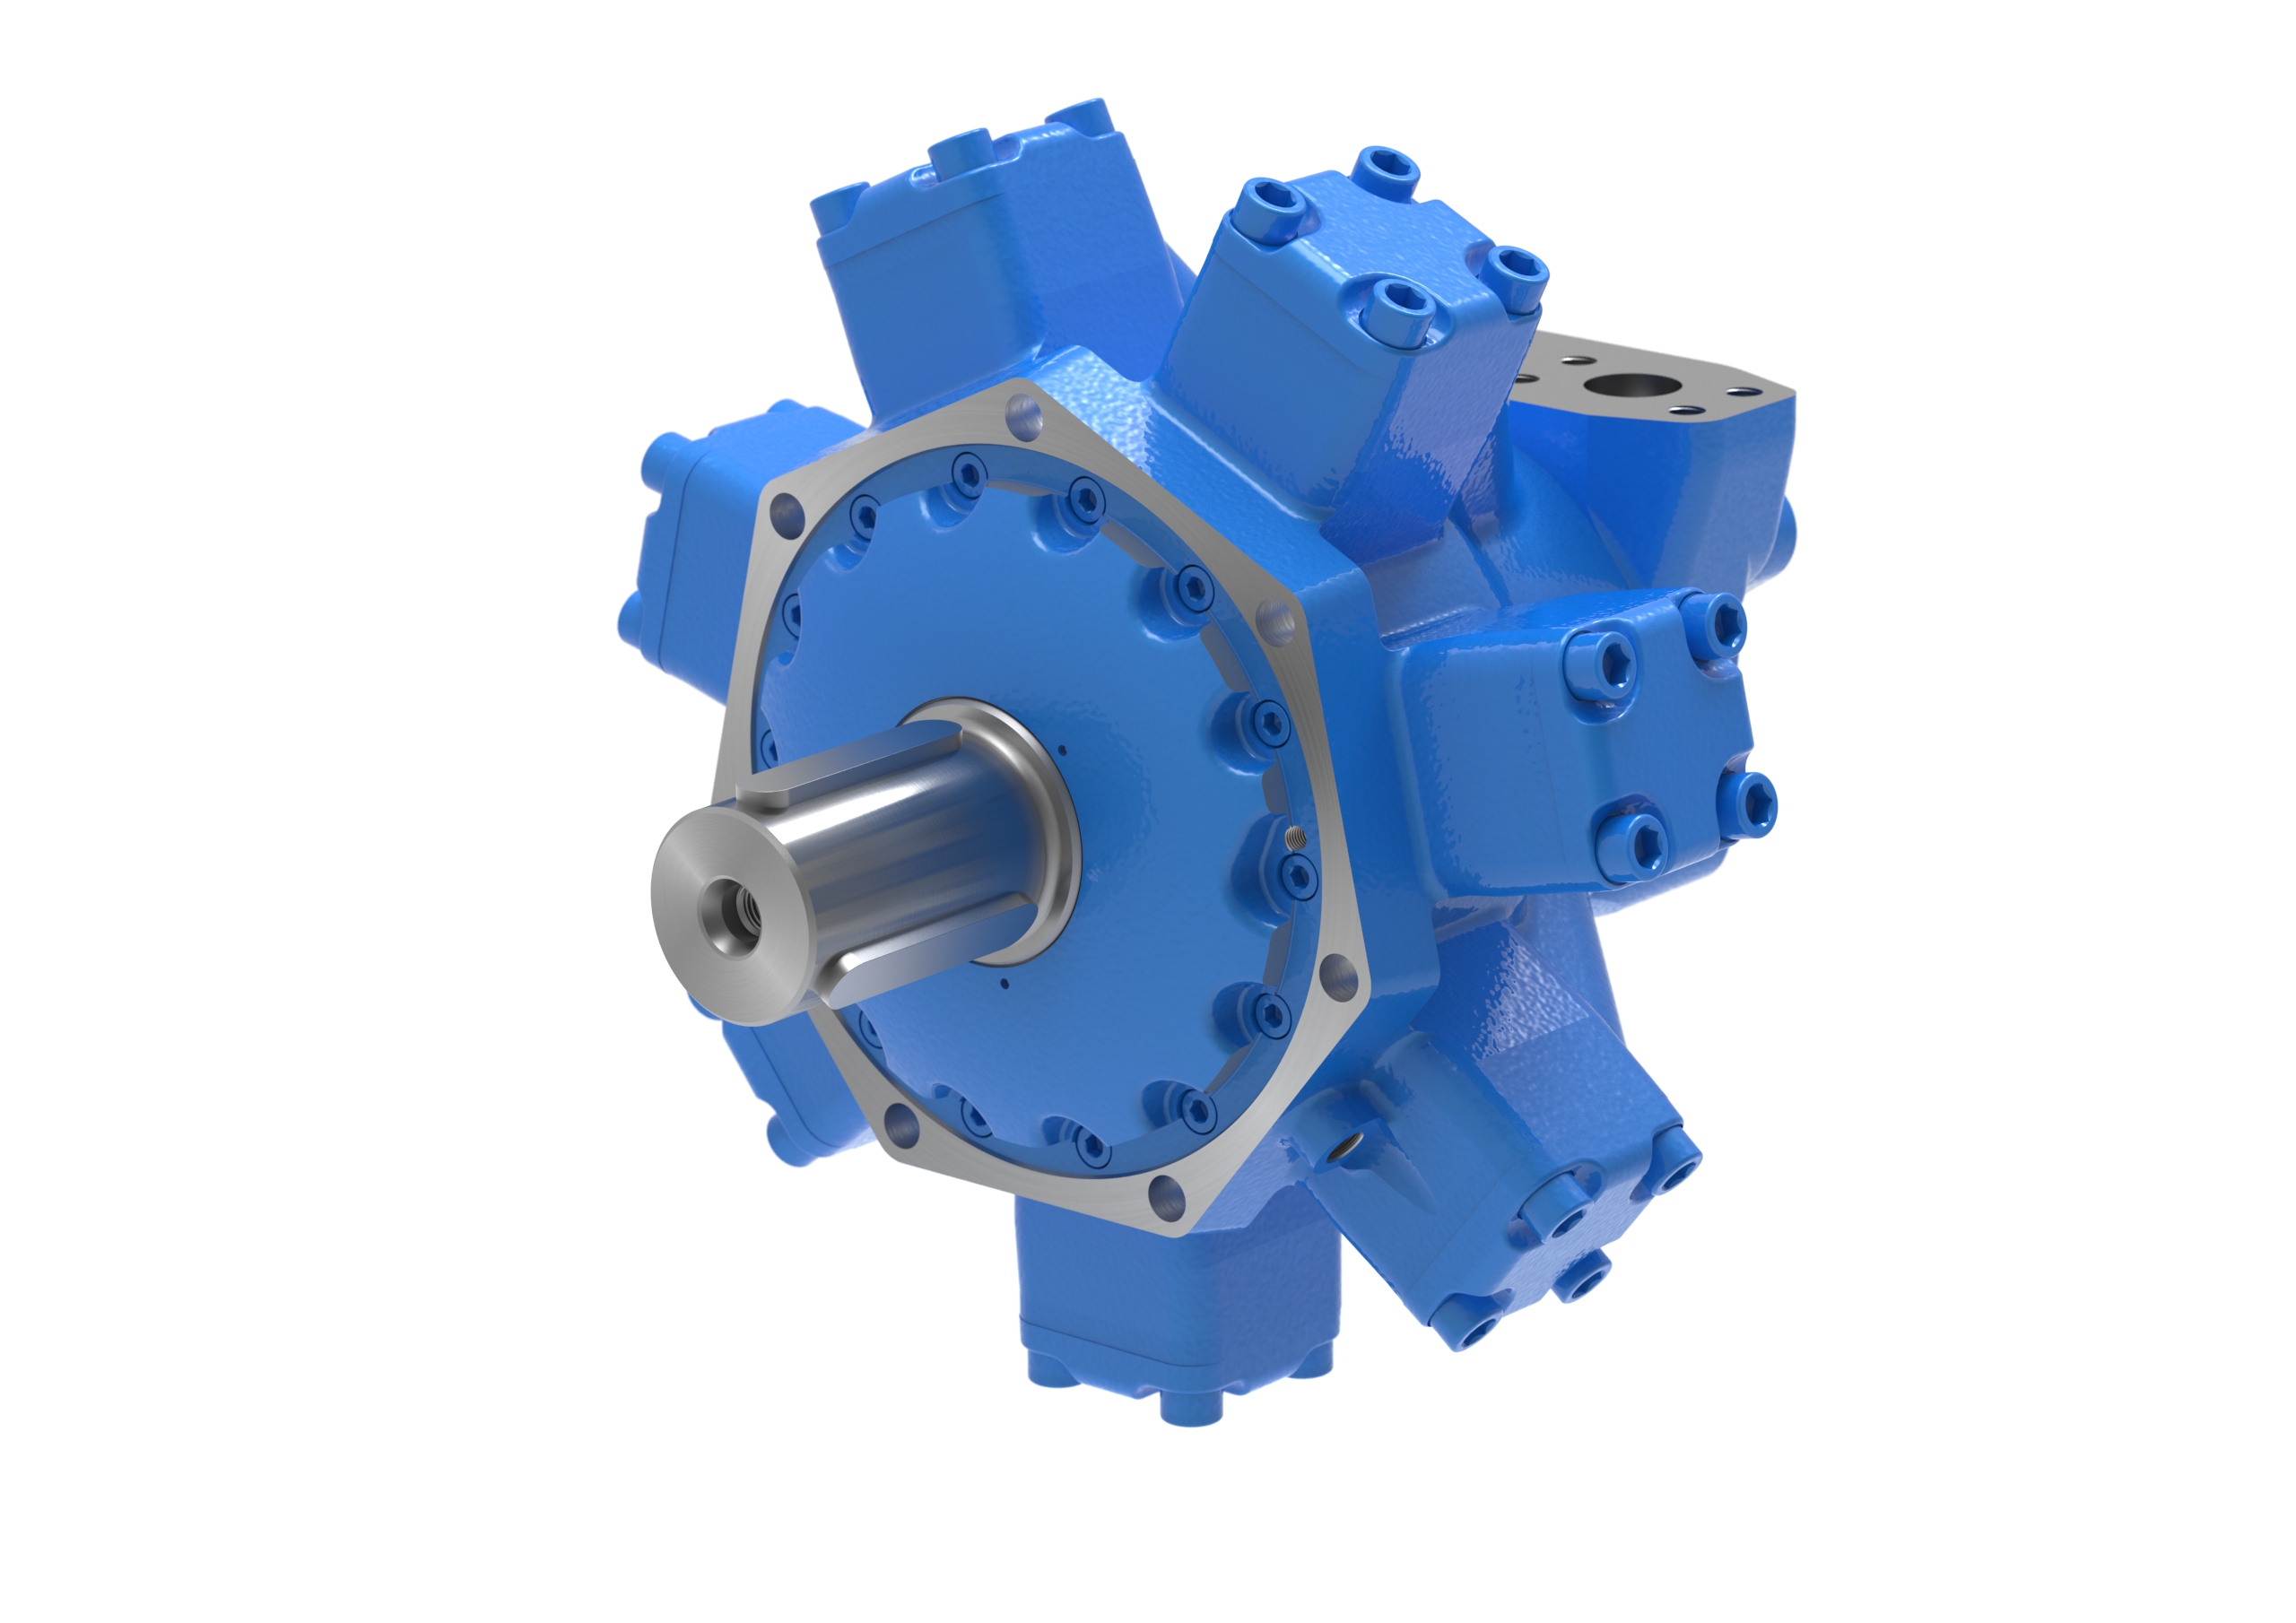 https://www.duesterloh.de/files/duesterloh/dist/img/Produkte/Hydraulikmotoren/RM_1250XZA1_hydraulikmotor_radialkolbenmotor_hydraulicmotor_radial_piston_motor.jpg